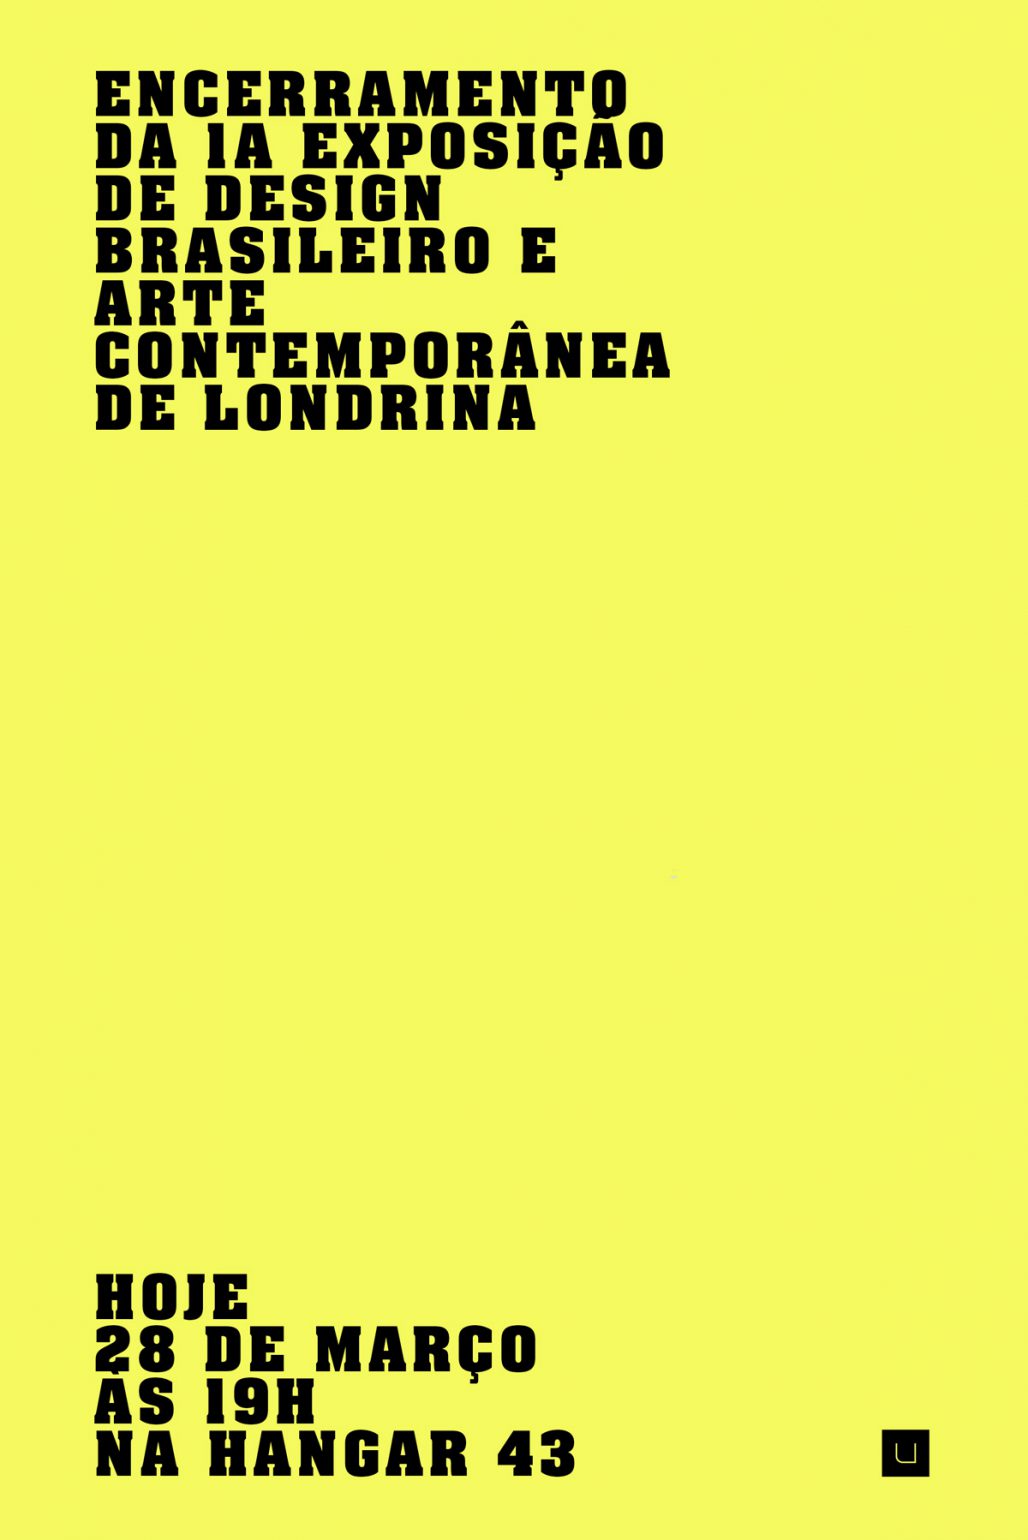 exposição arte contemporânea design brasileiro londrina uabi